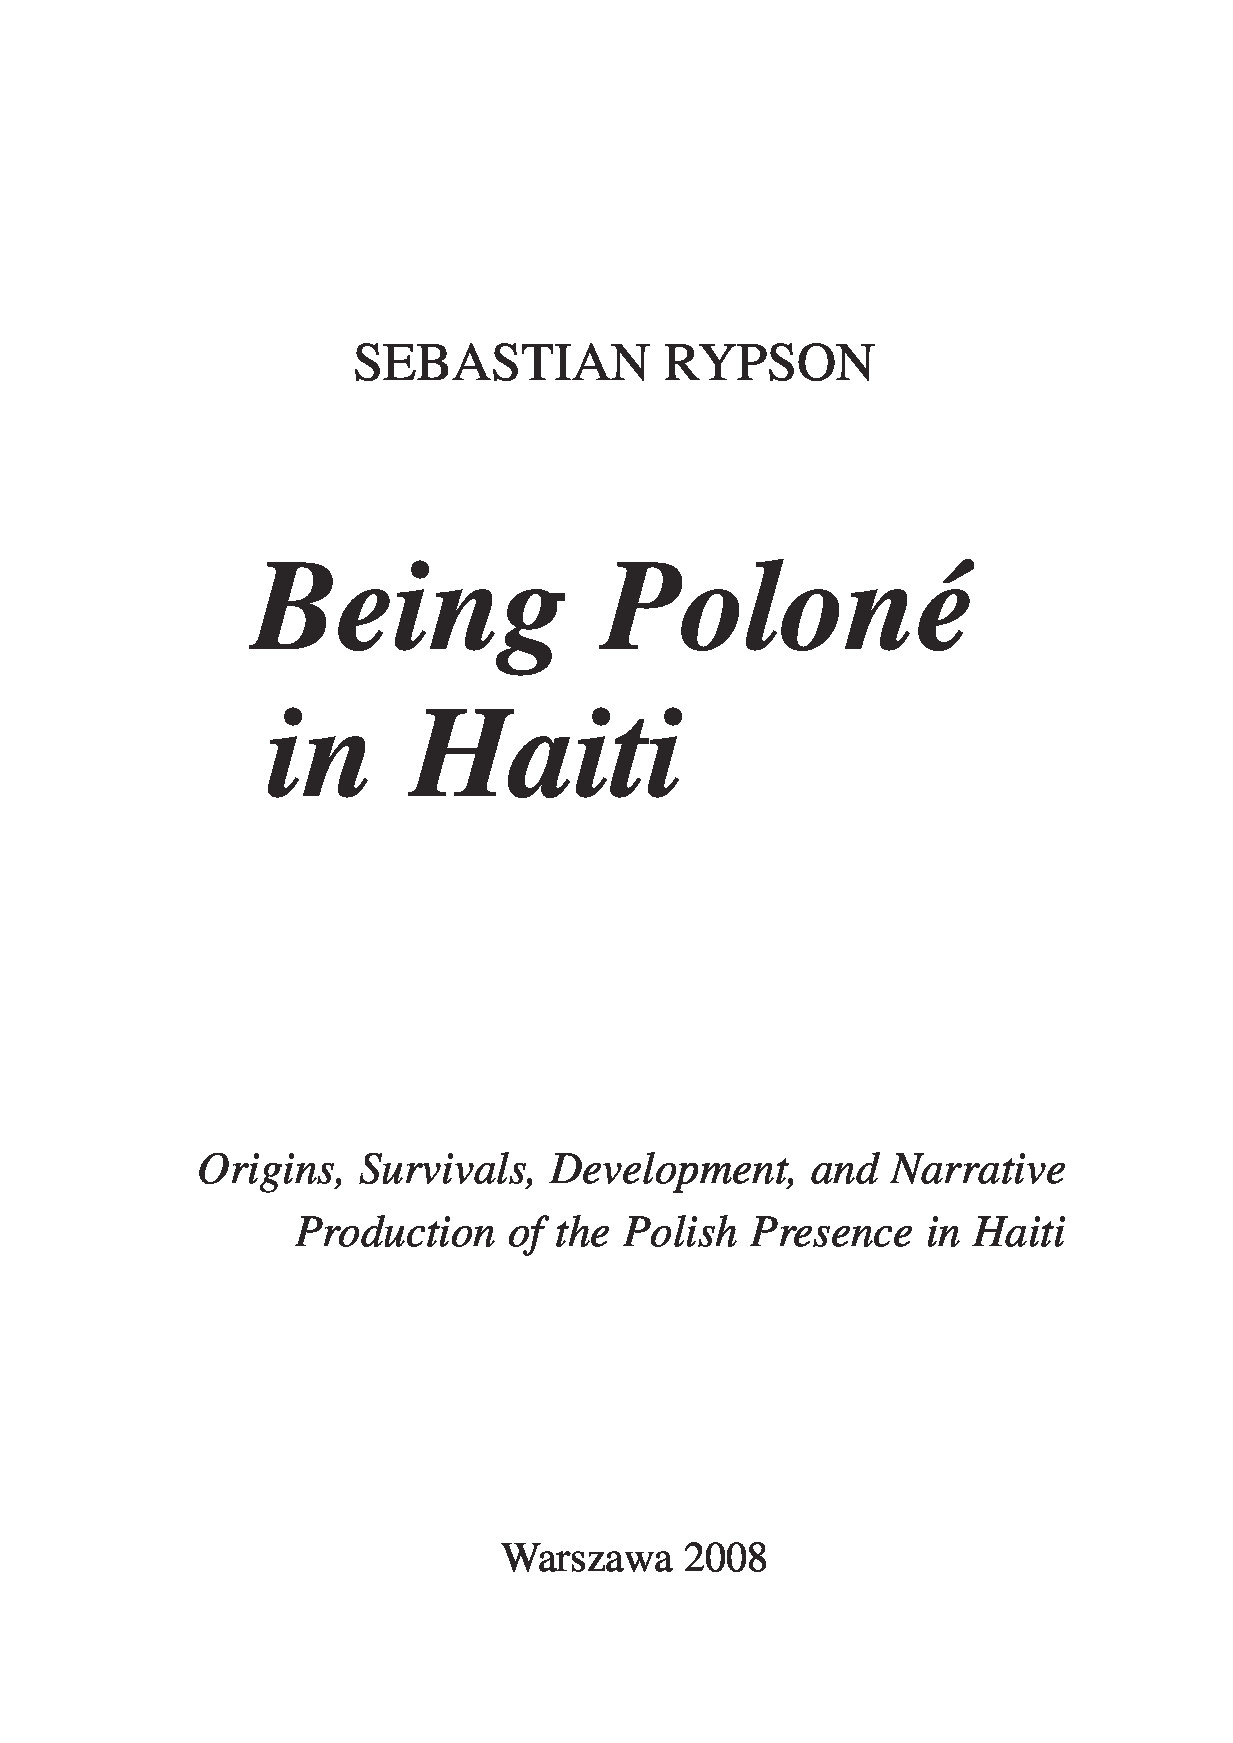 Being Poloné in Haiti (Oficyna Wydawnicza)